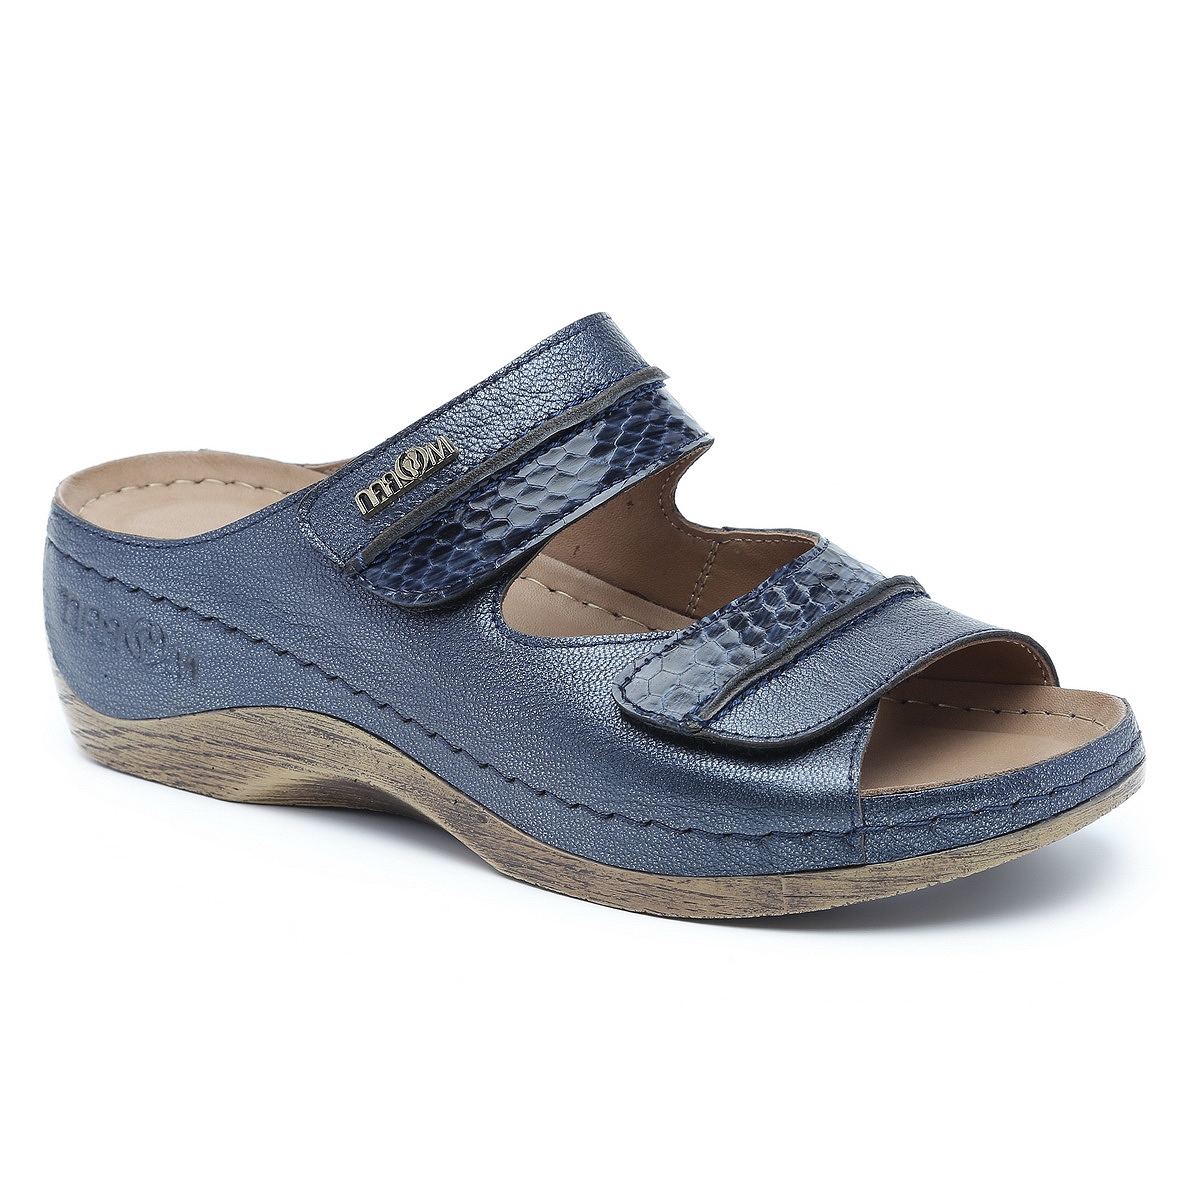 כפכפים נוחים לנשים בצבע כחול - נעלי מורן אונליין